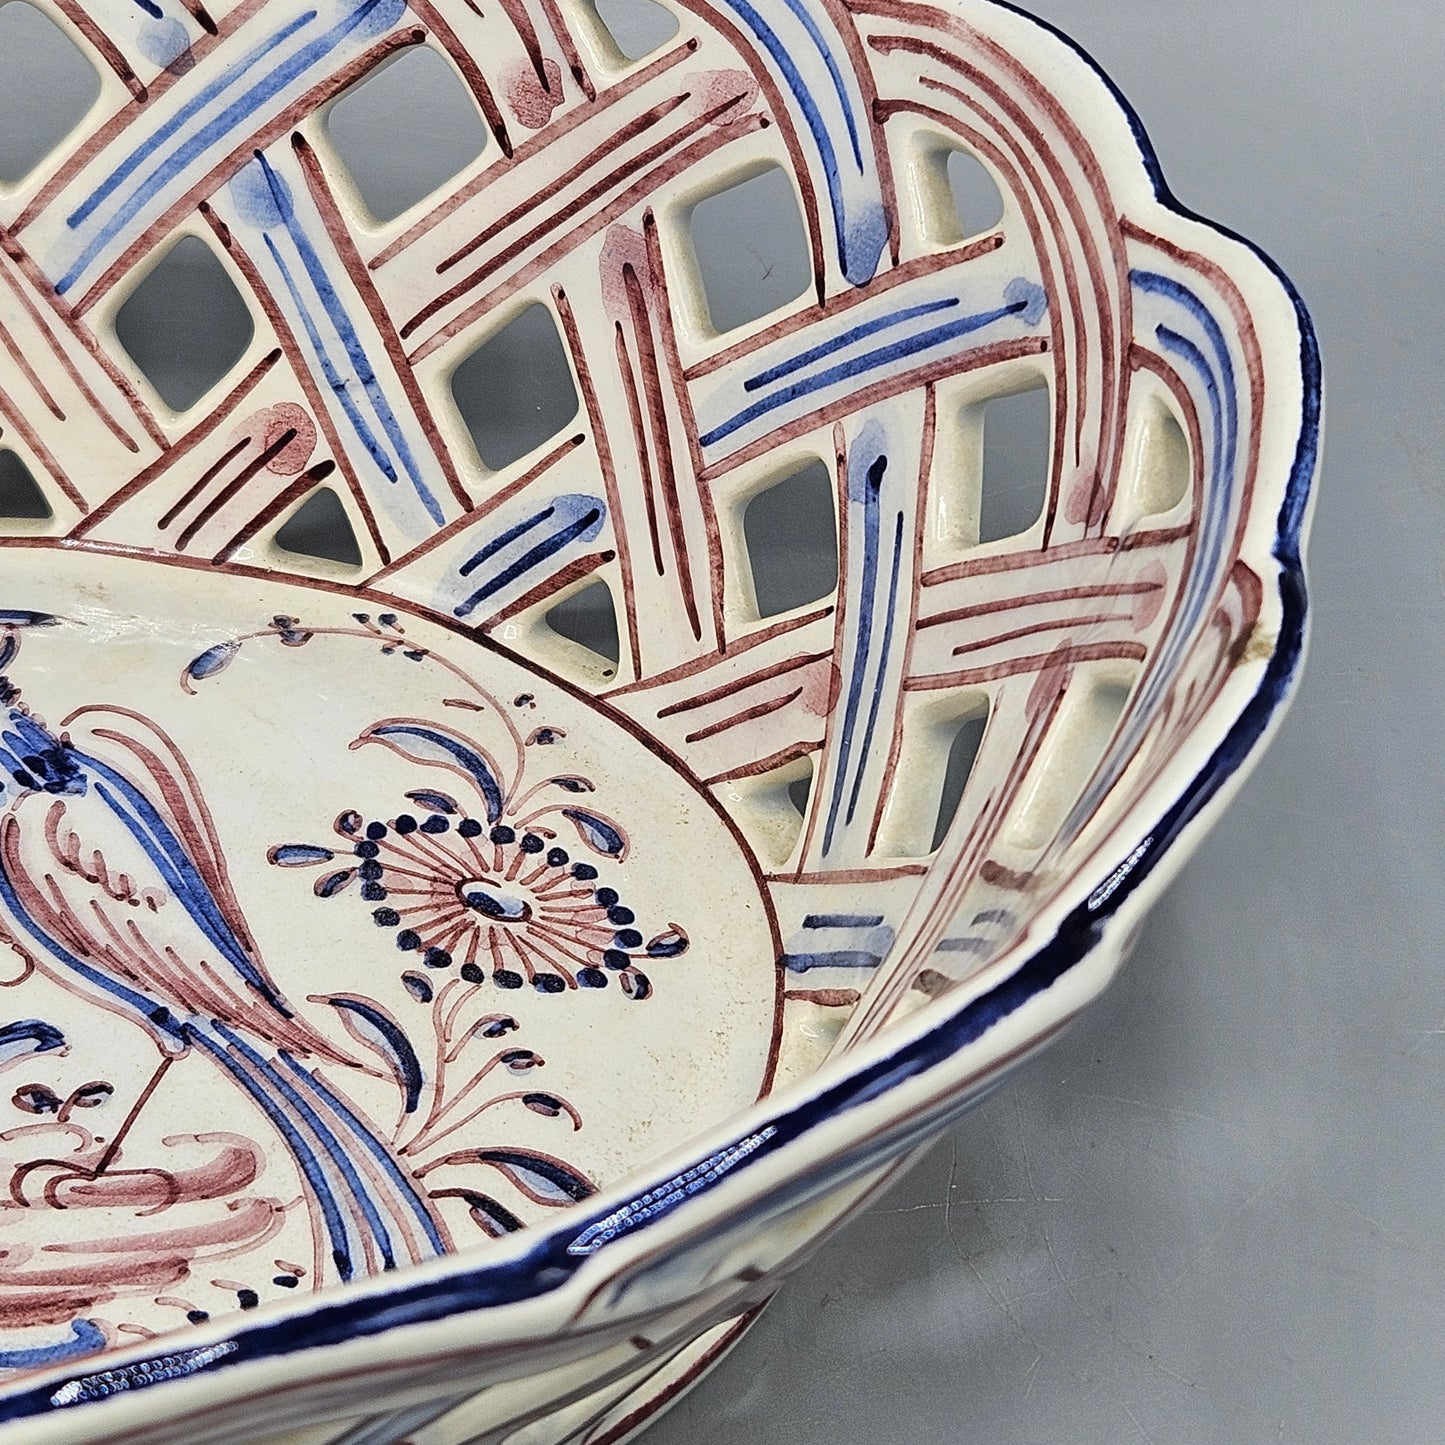 Agueda (Portugal) Ceramic Lattice Bowl with Bird Design